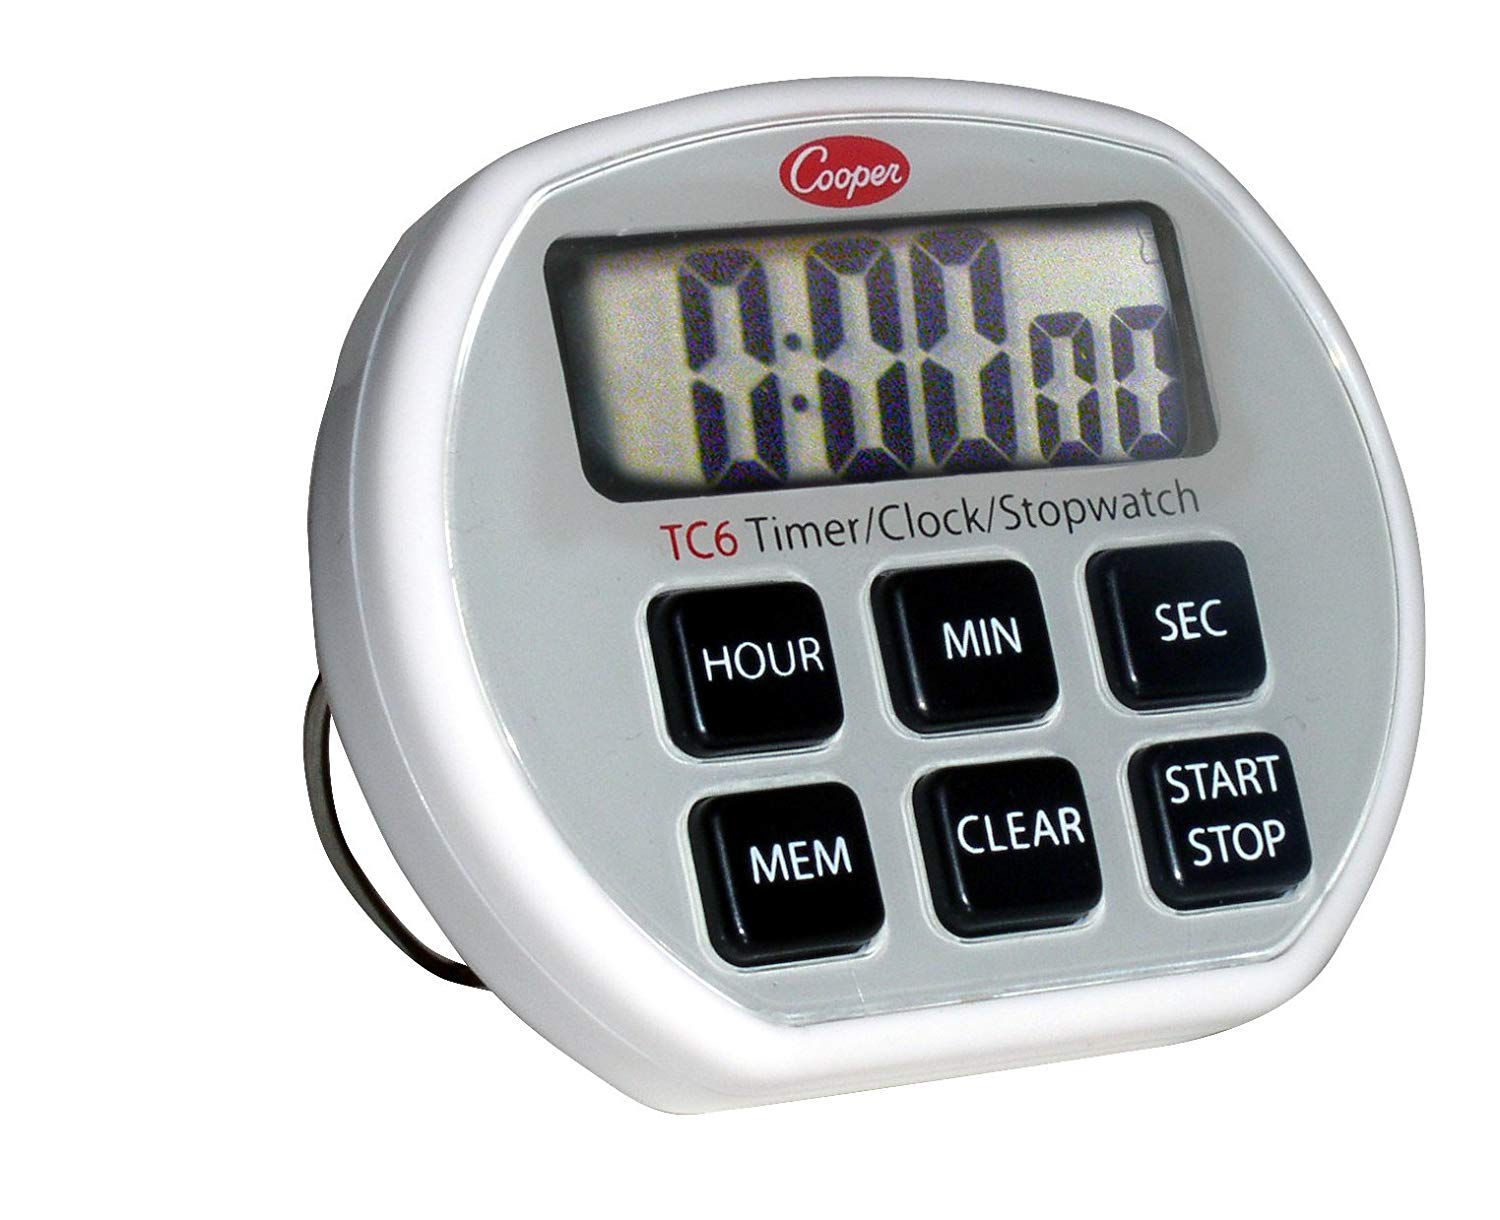 Cronometro digital de 4 tiempos Cat. DAR-X24706 Marca Daigger